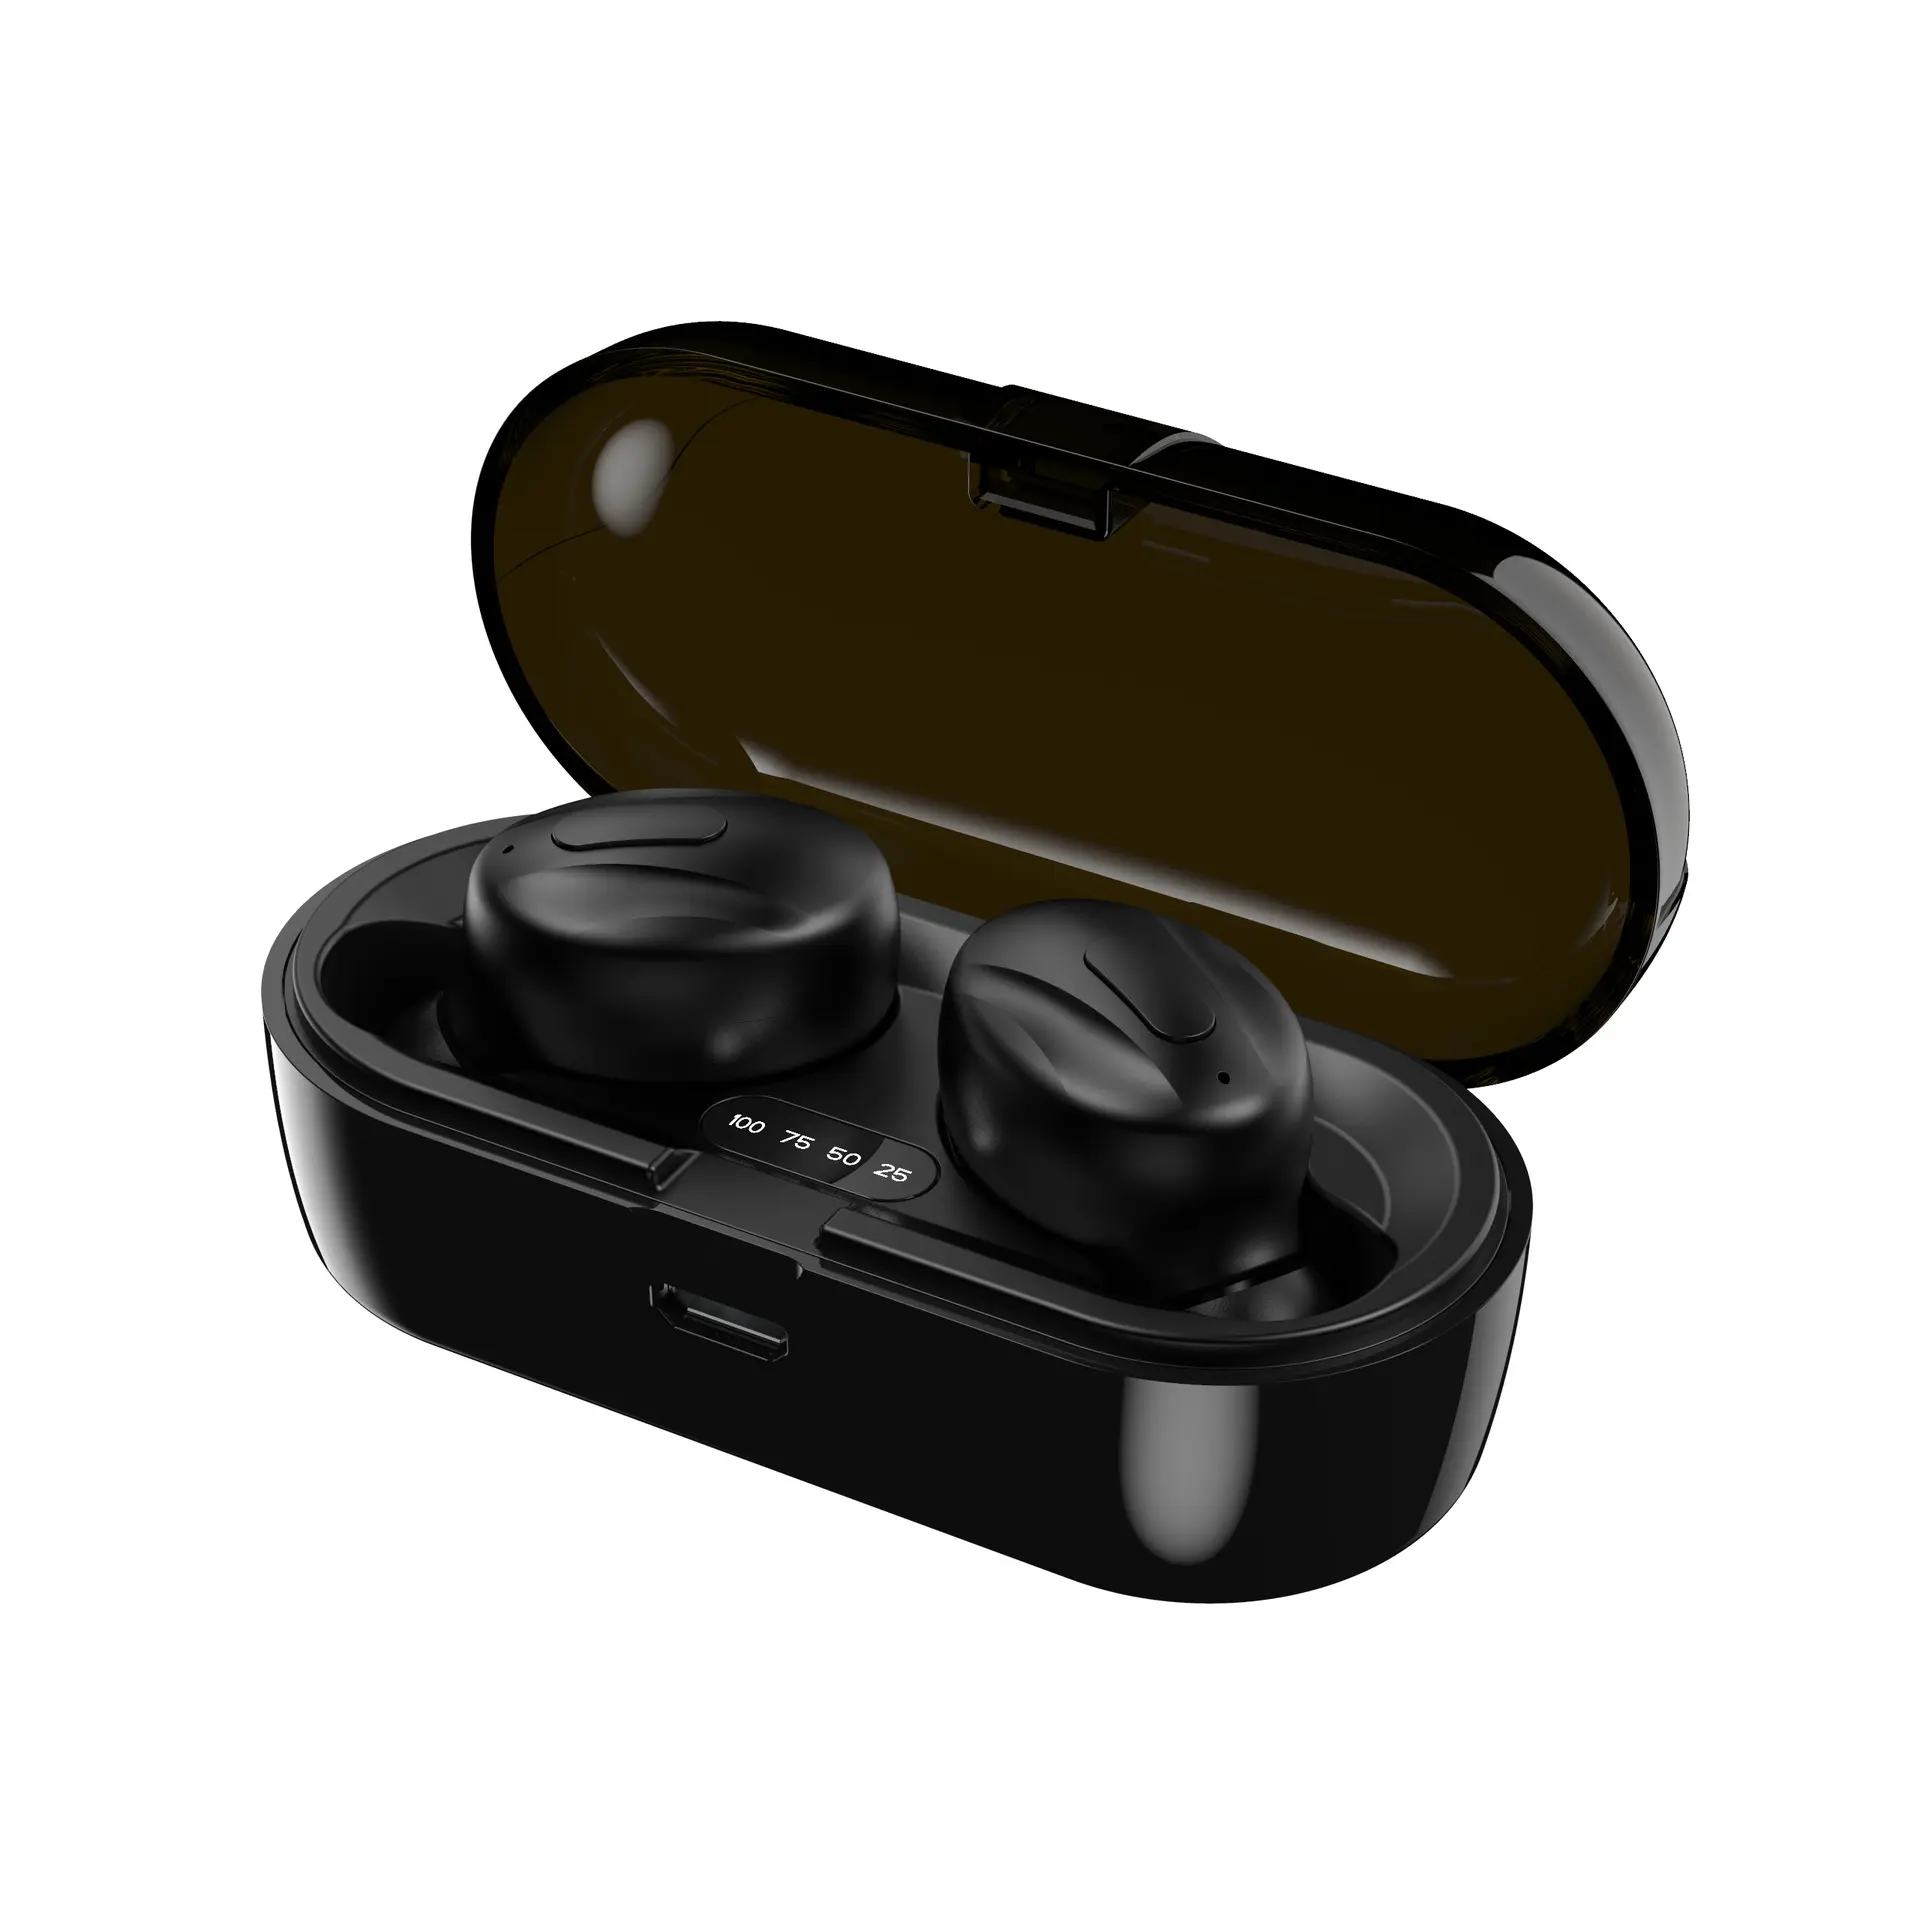 Earbud & In-Ear Headphones Free Sample And Free Shipment Earbud In-Ear Headphones Gaming Headphones